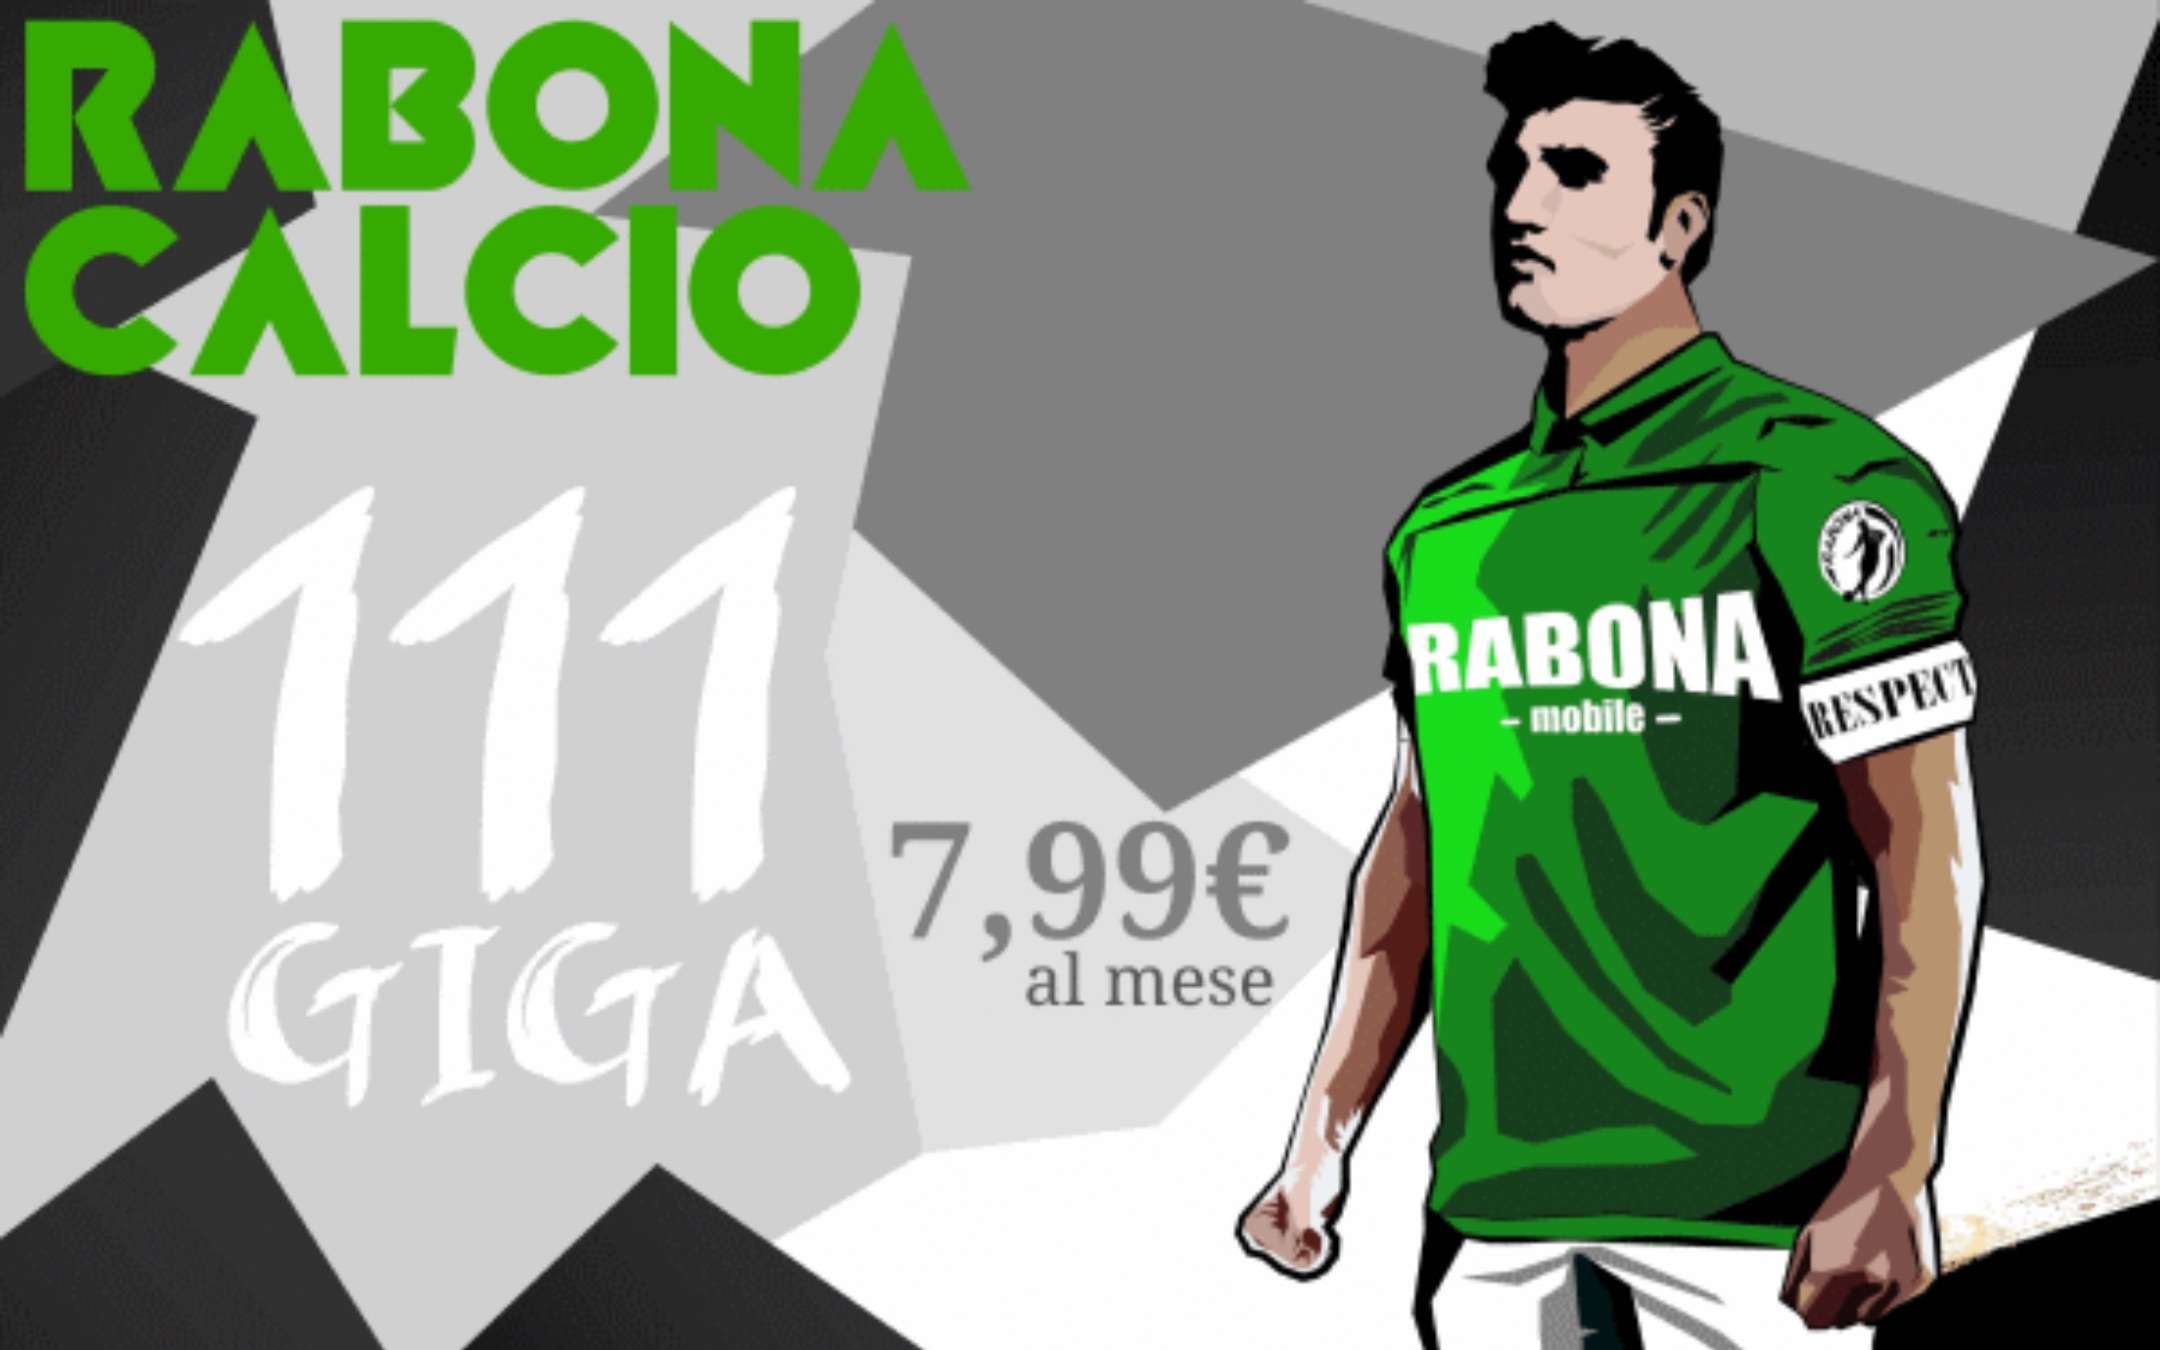 Rabona Calcio: ritorna la promo con 111GB a 7,99€